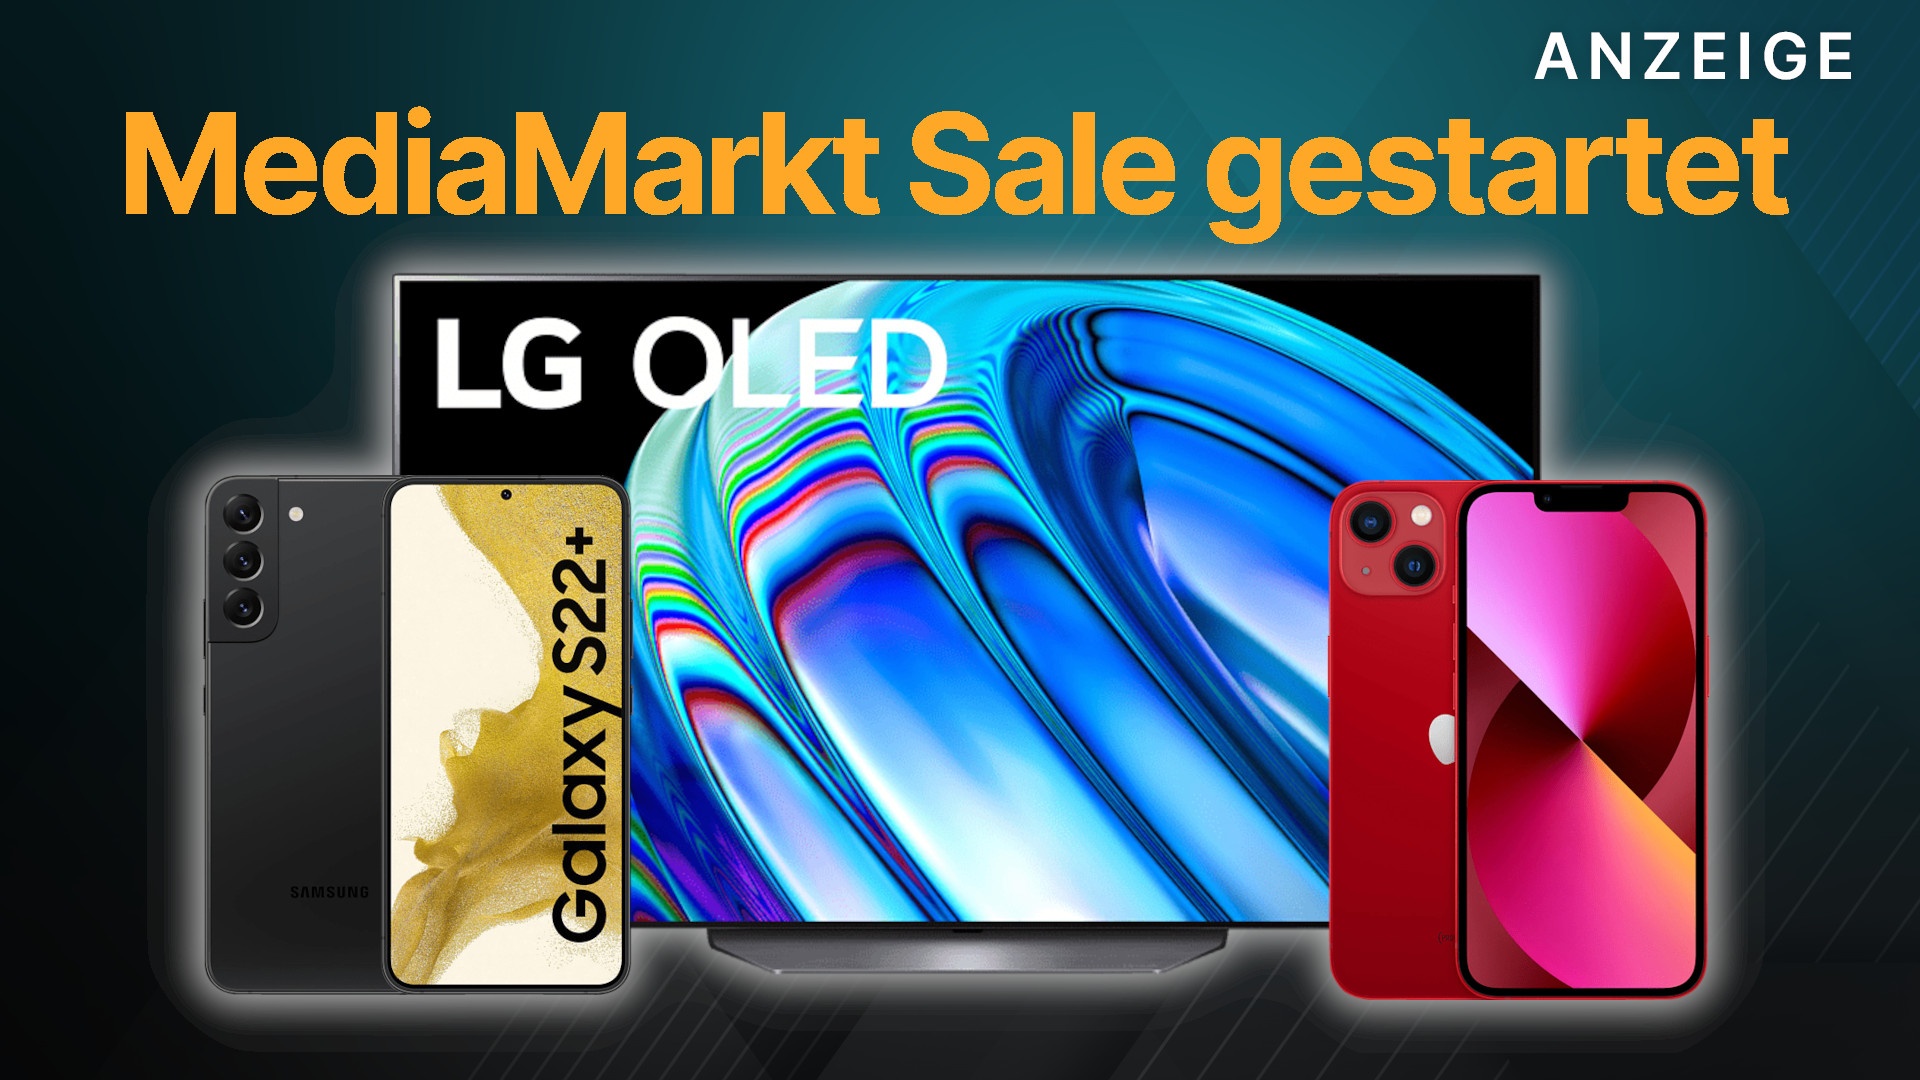 Neuer Sale bei MediaMarkt: LG OLED TV mit 55 Zoll, iPhones & Samsung Handys günstig